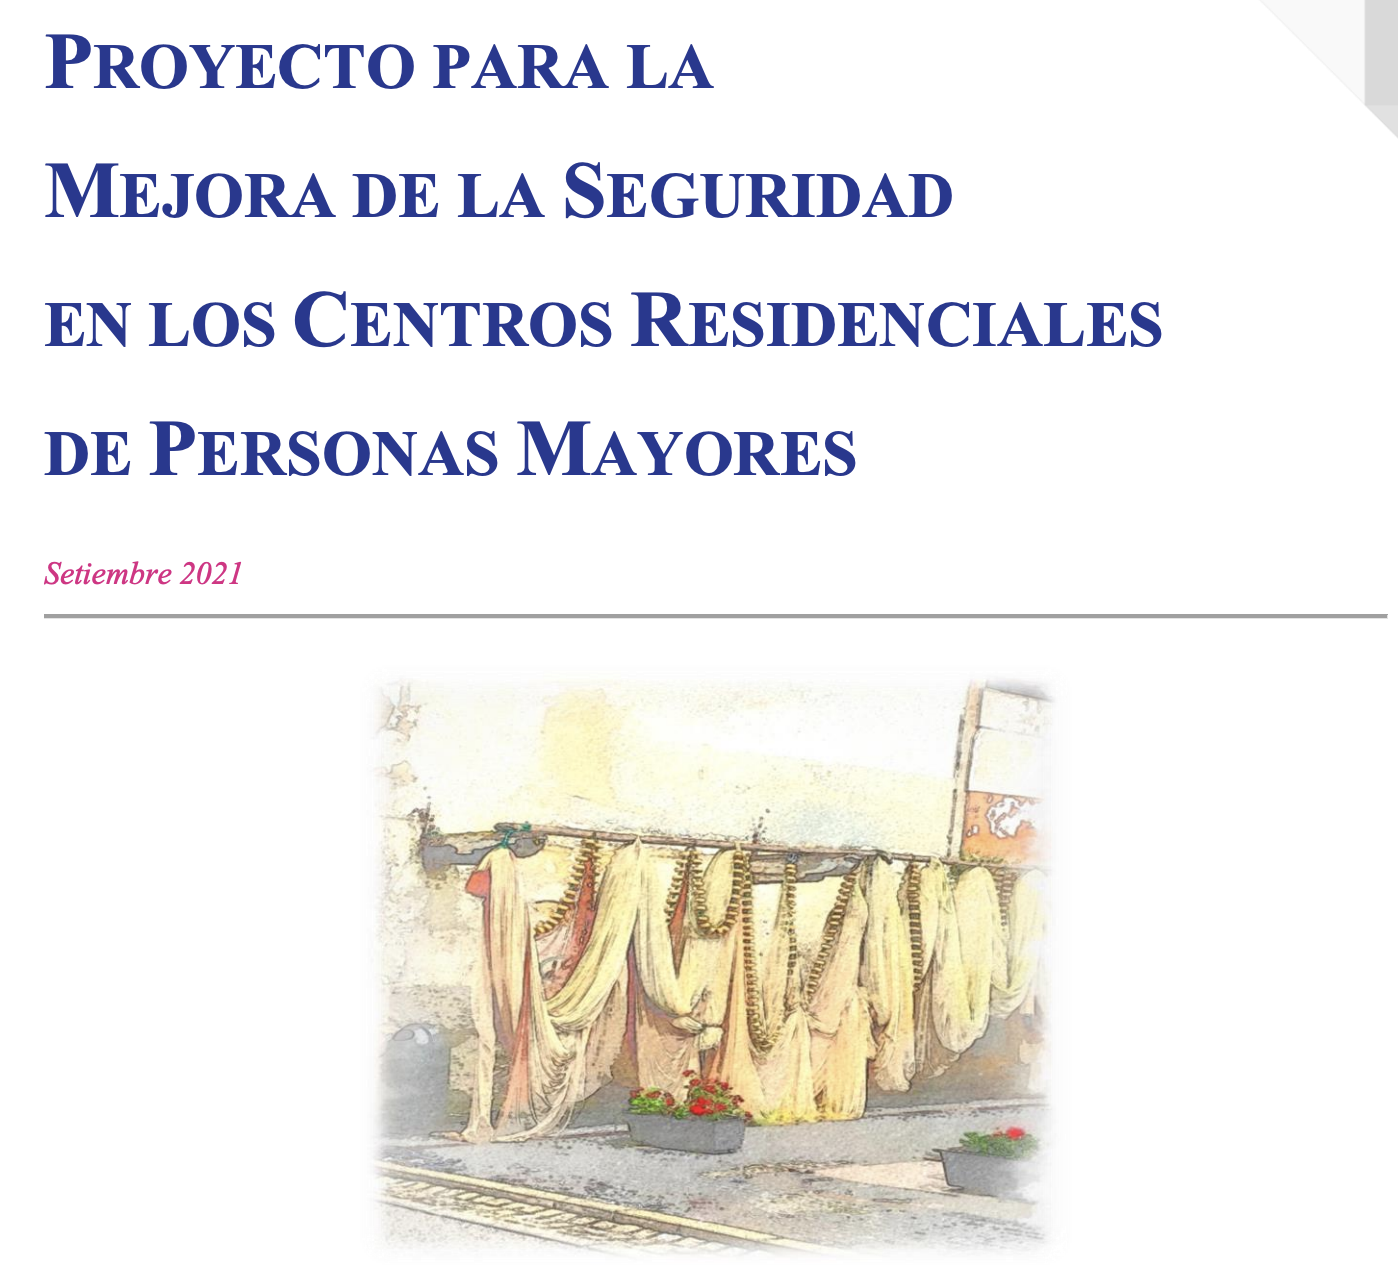 Proyecto para la mejora de la seguridad en los centros residenciales de personas mayores